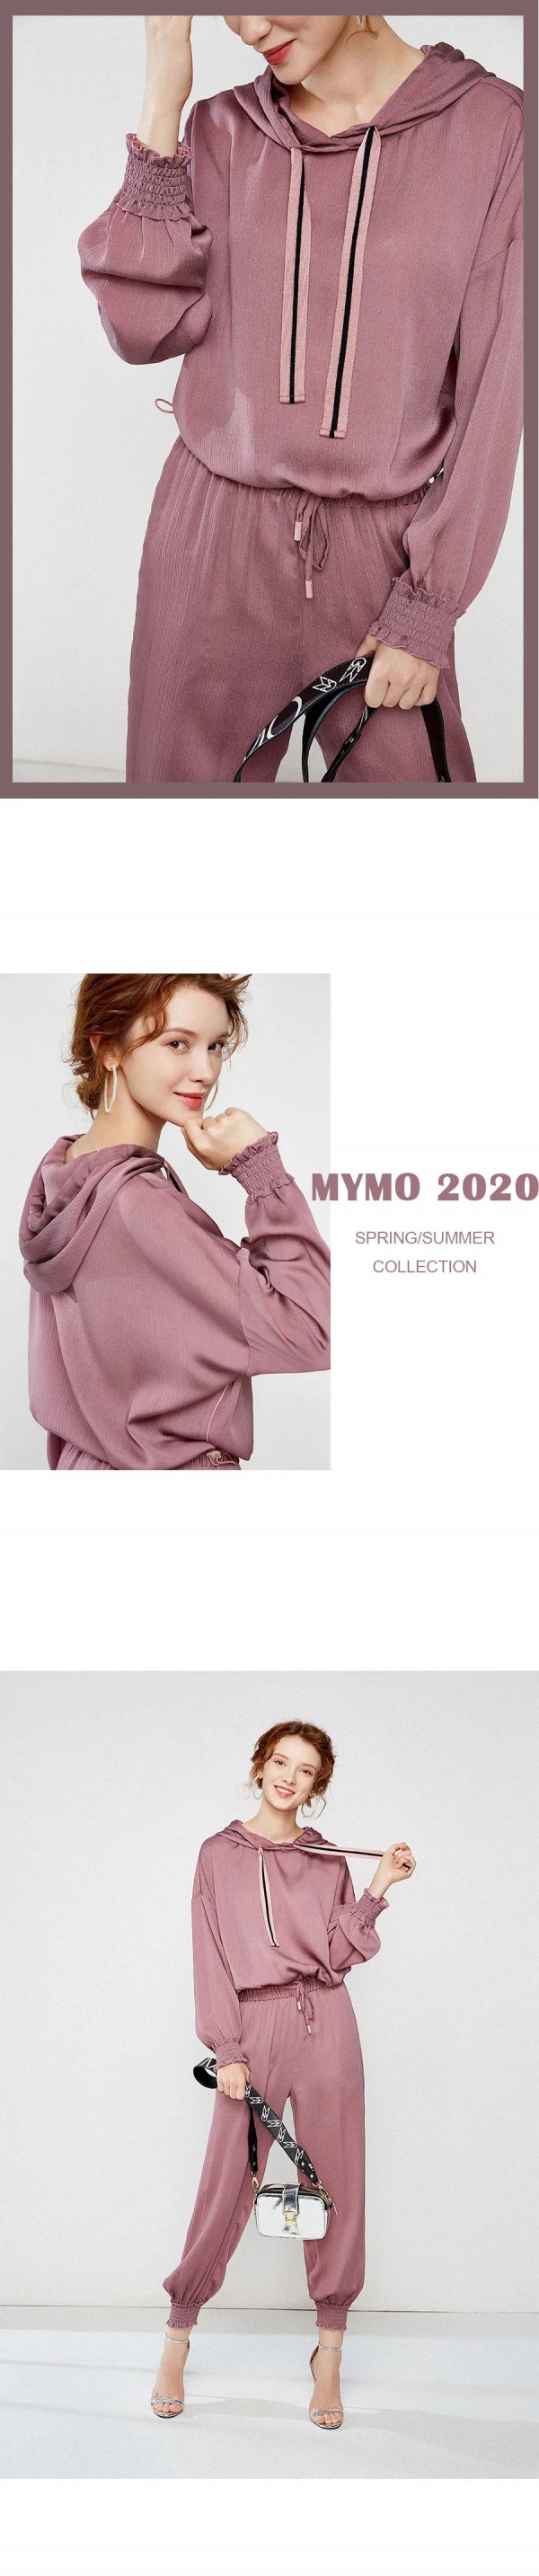 MYMO女裝品牌2020夏季新品 釋放束縛